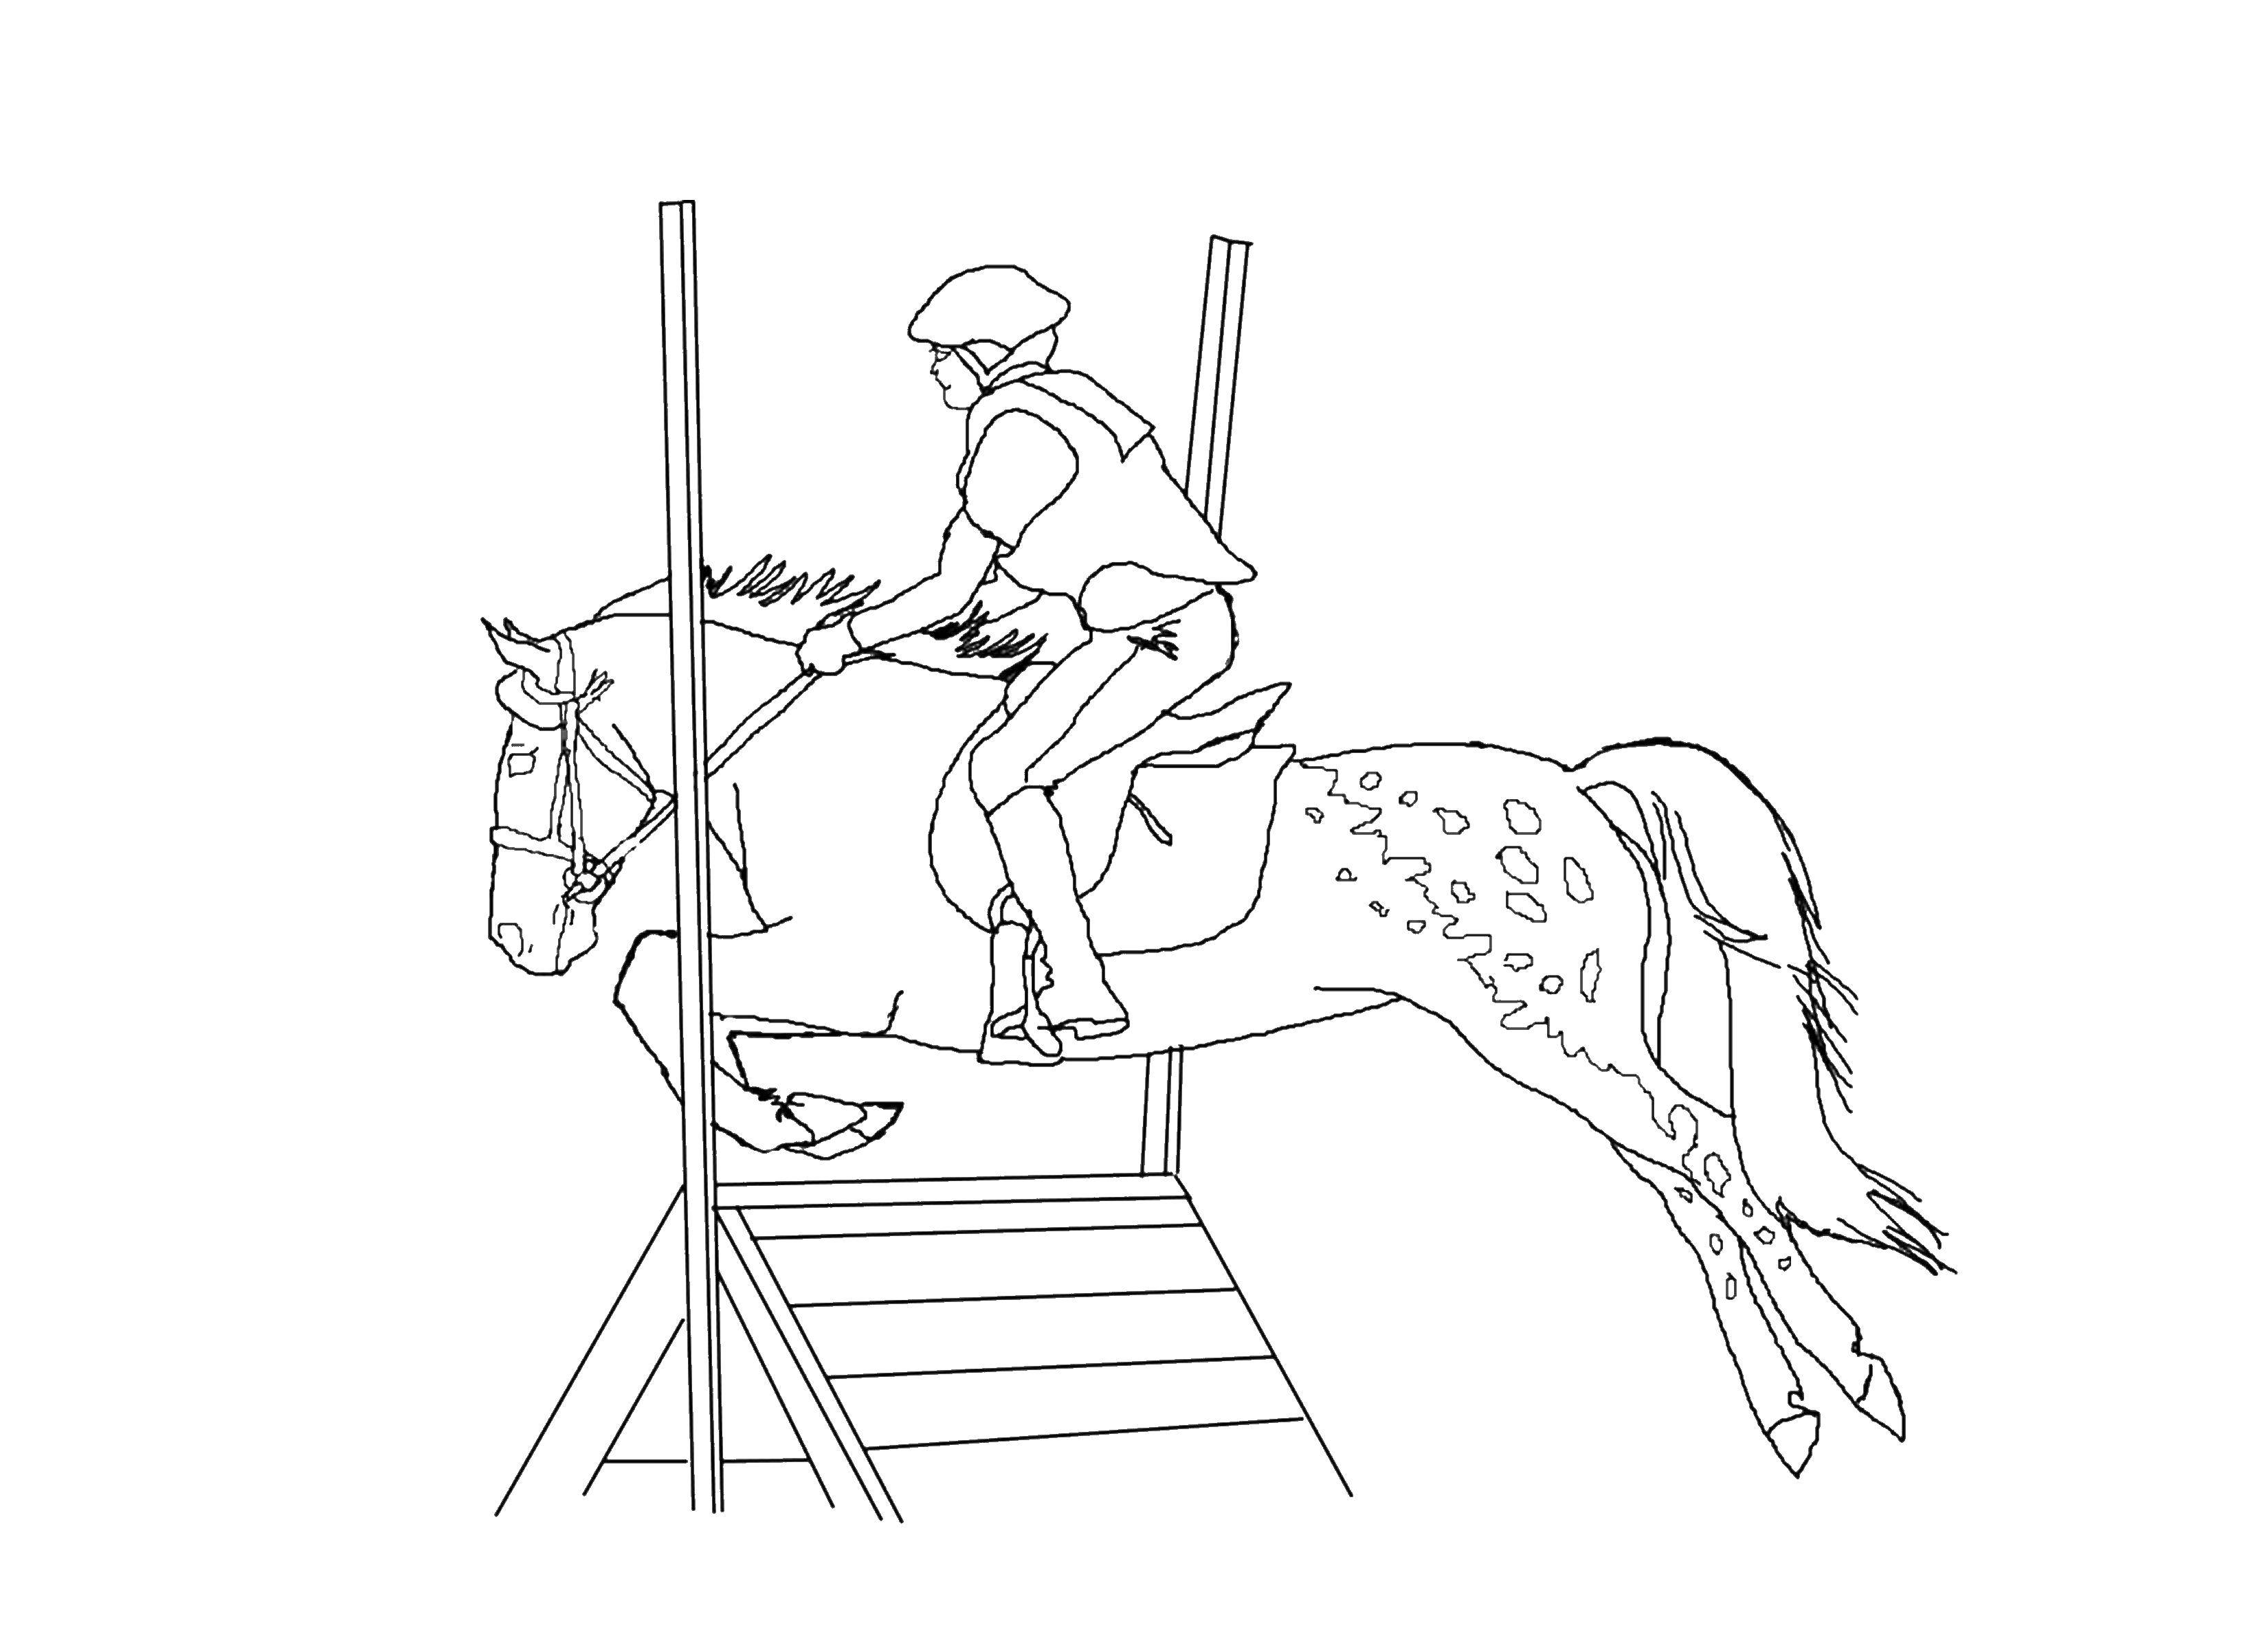 Название: Раскраска Наездник на лошади. Категория: Животные. Теги: животные, лошадь, конь, скачки.